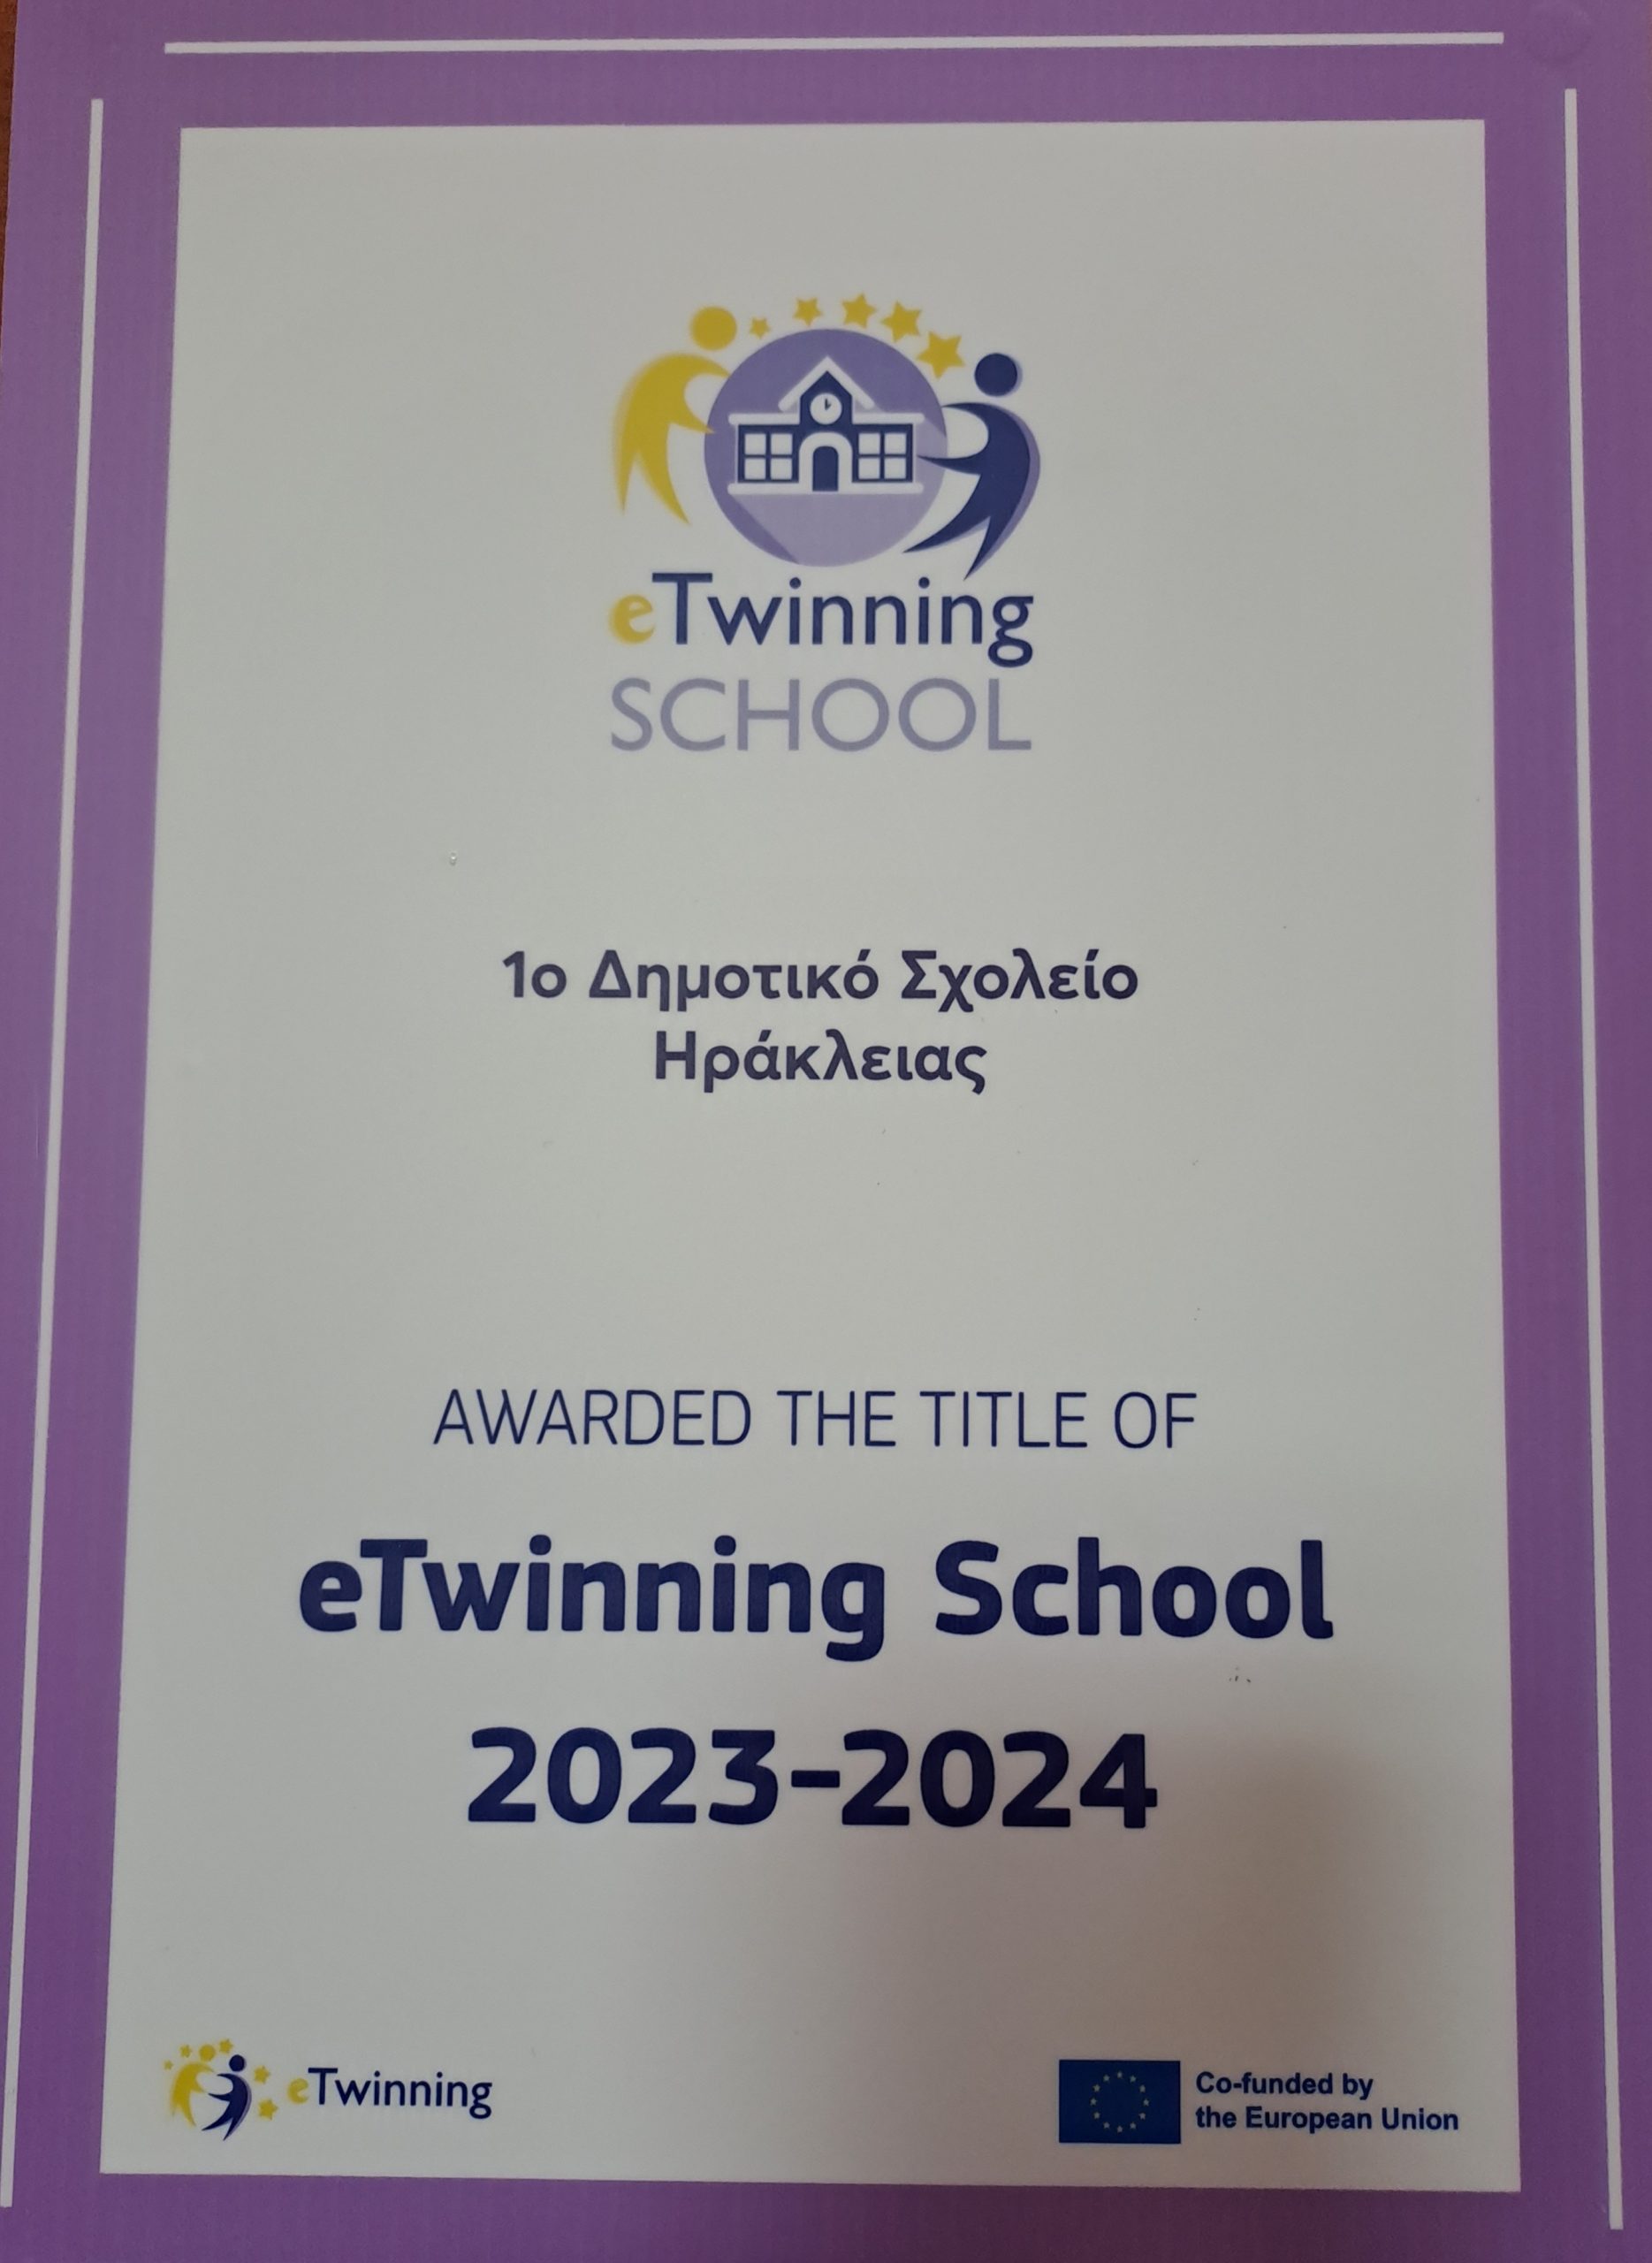 ΠΛΑΚΕΤΑ etwinning school